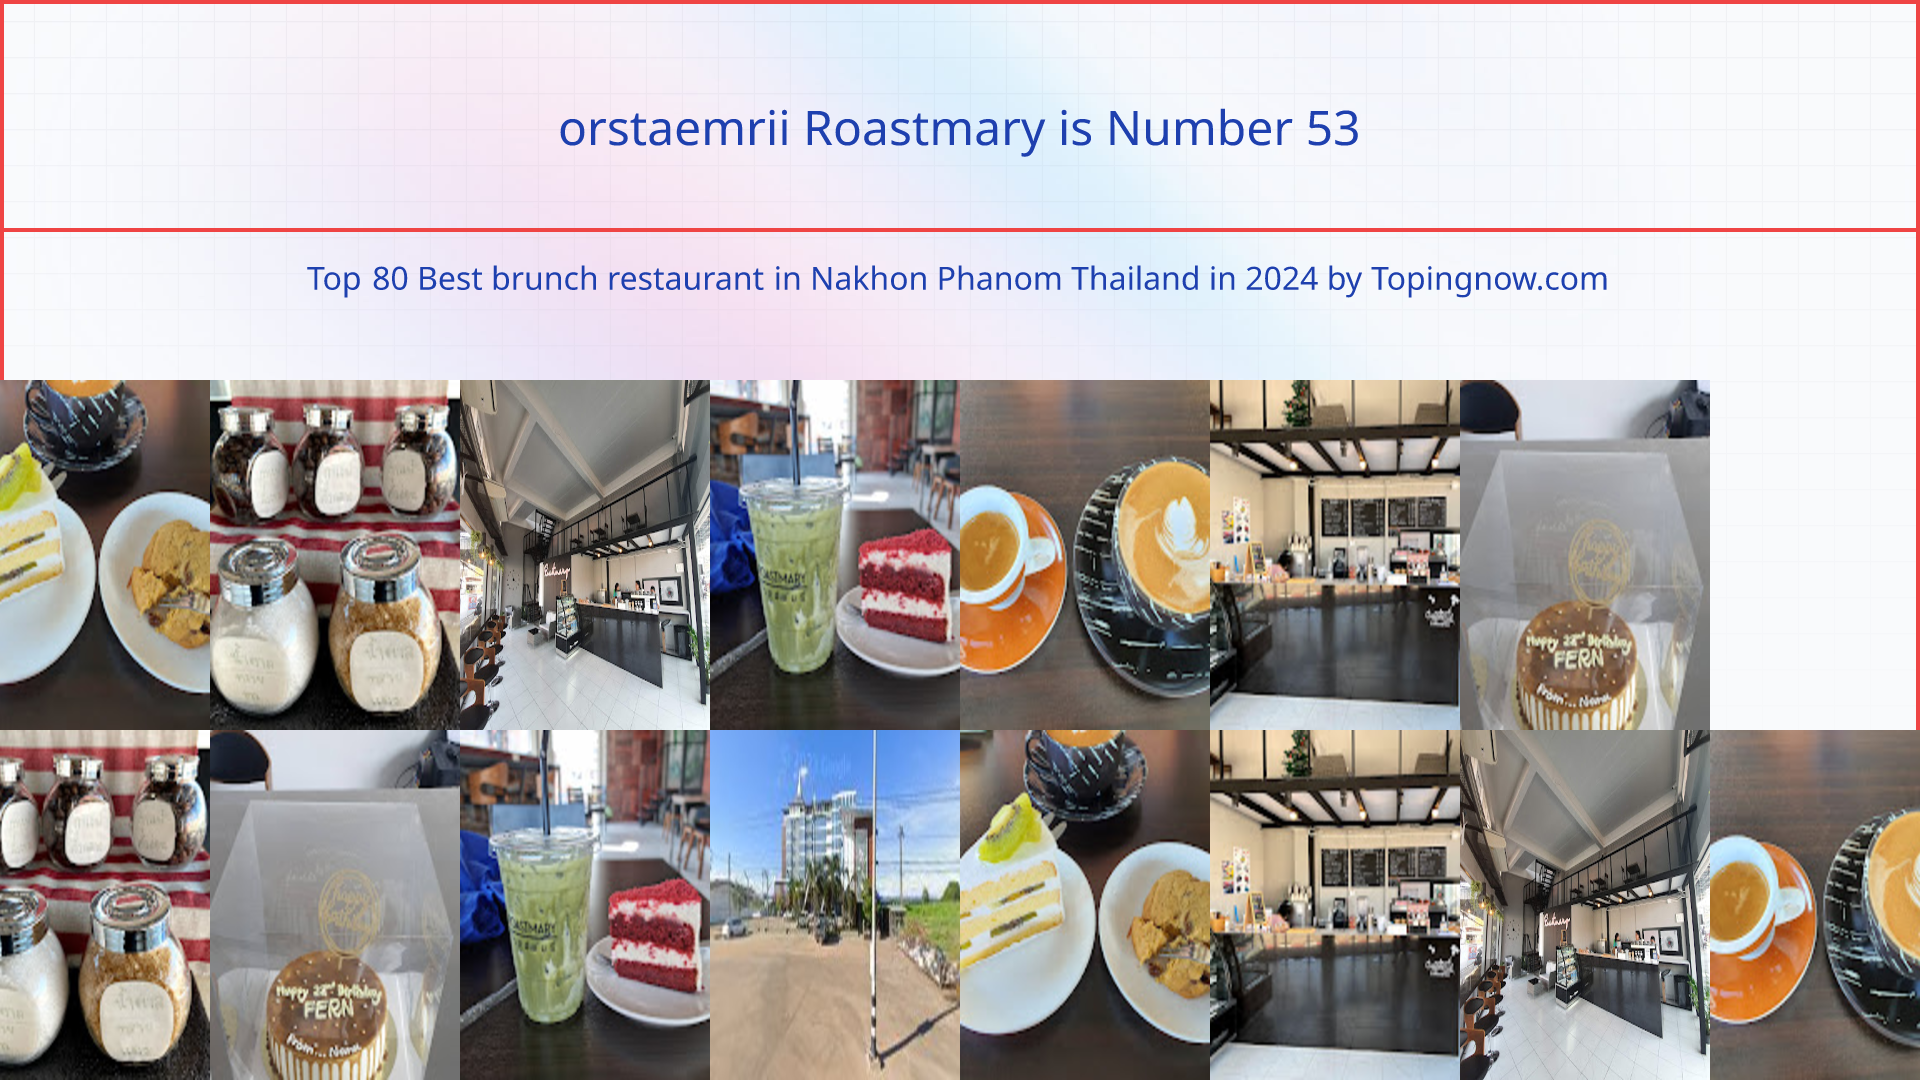 orstaemrii Roastmary: Top 80 Best brunch restaurant in Nakhon Phanom Thailand in 2024